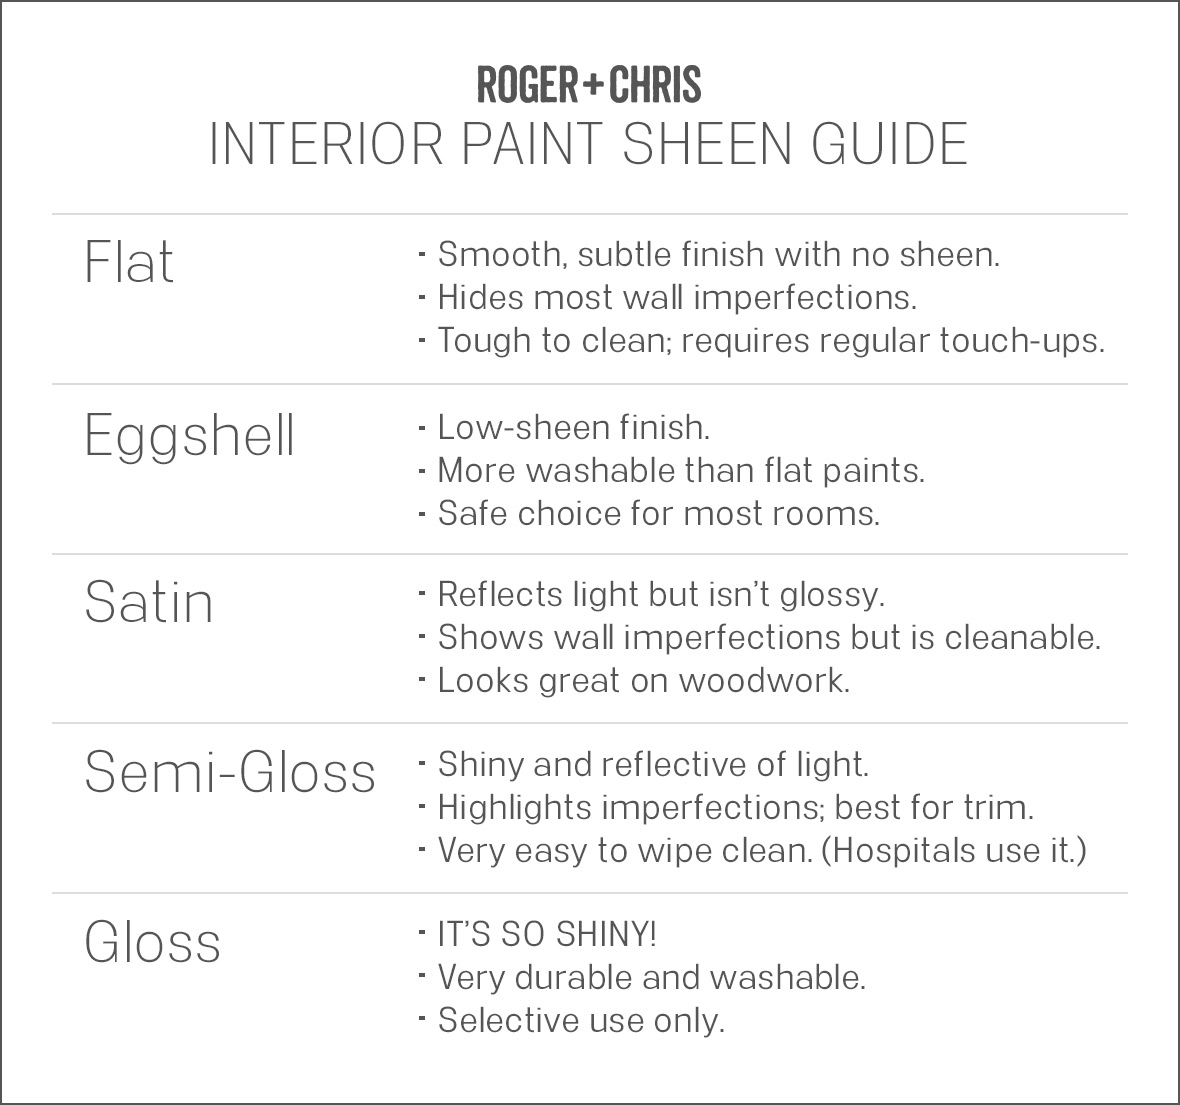 Paint sheen guide flat eggshell satin semi-gloss gloss